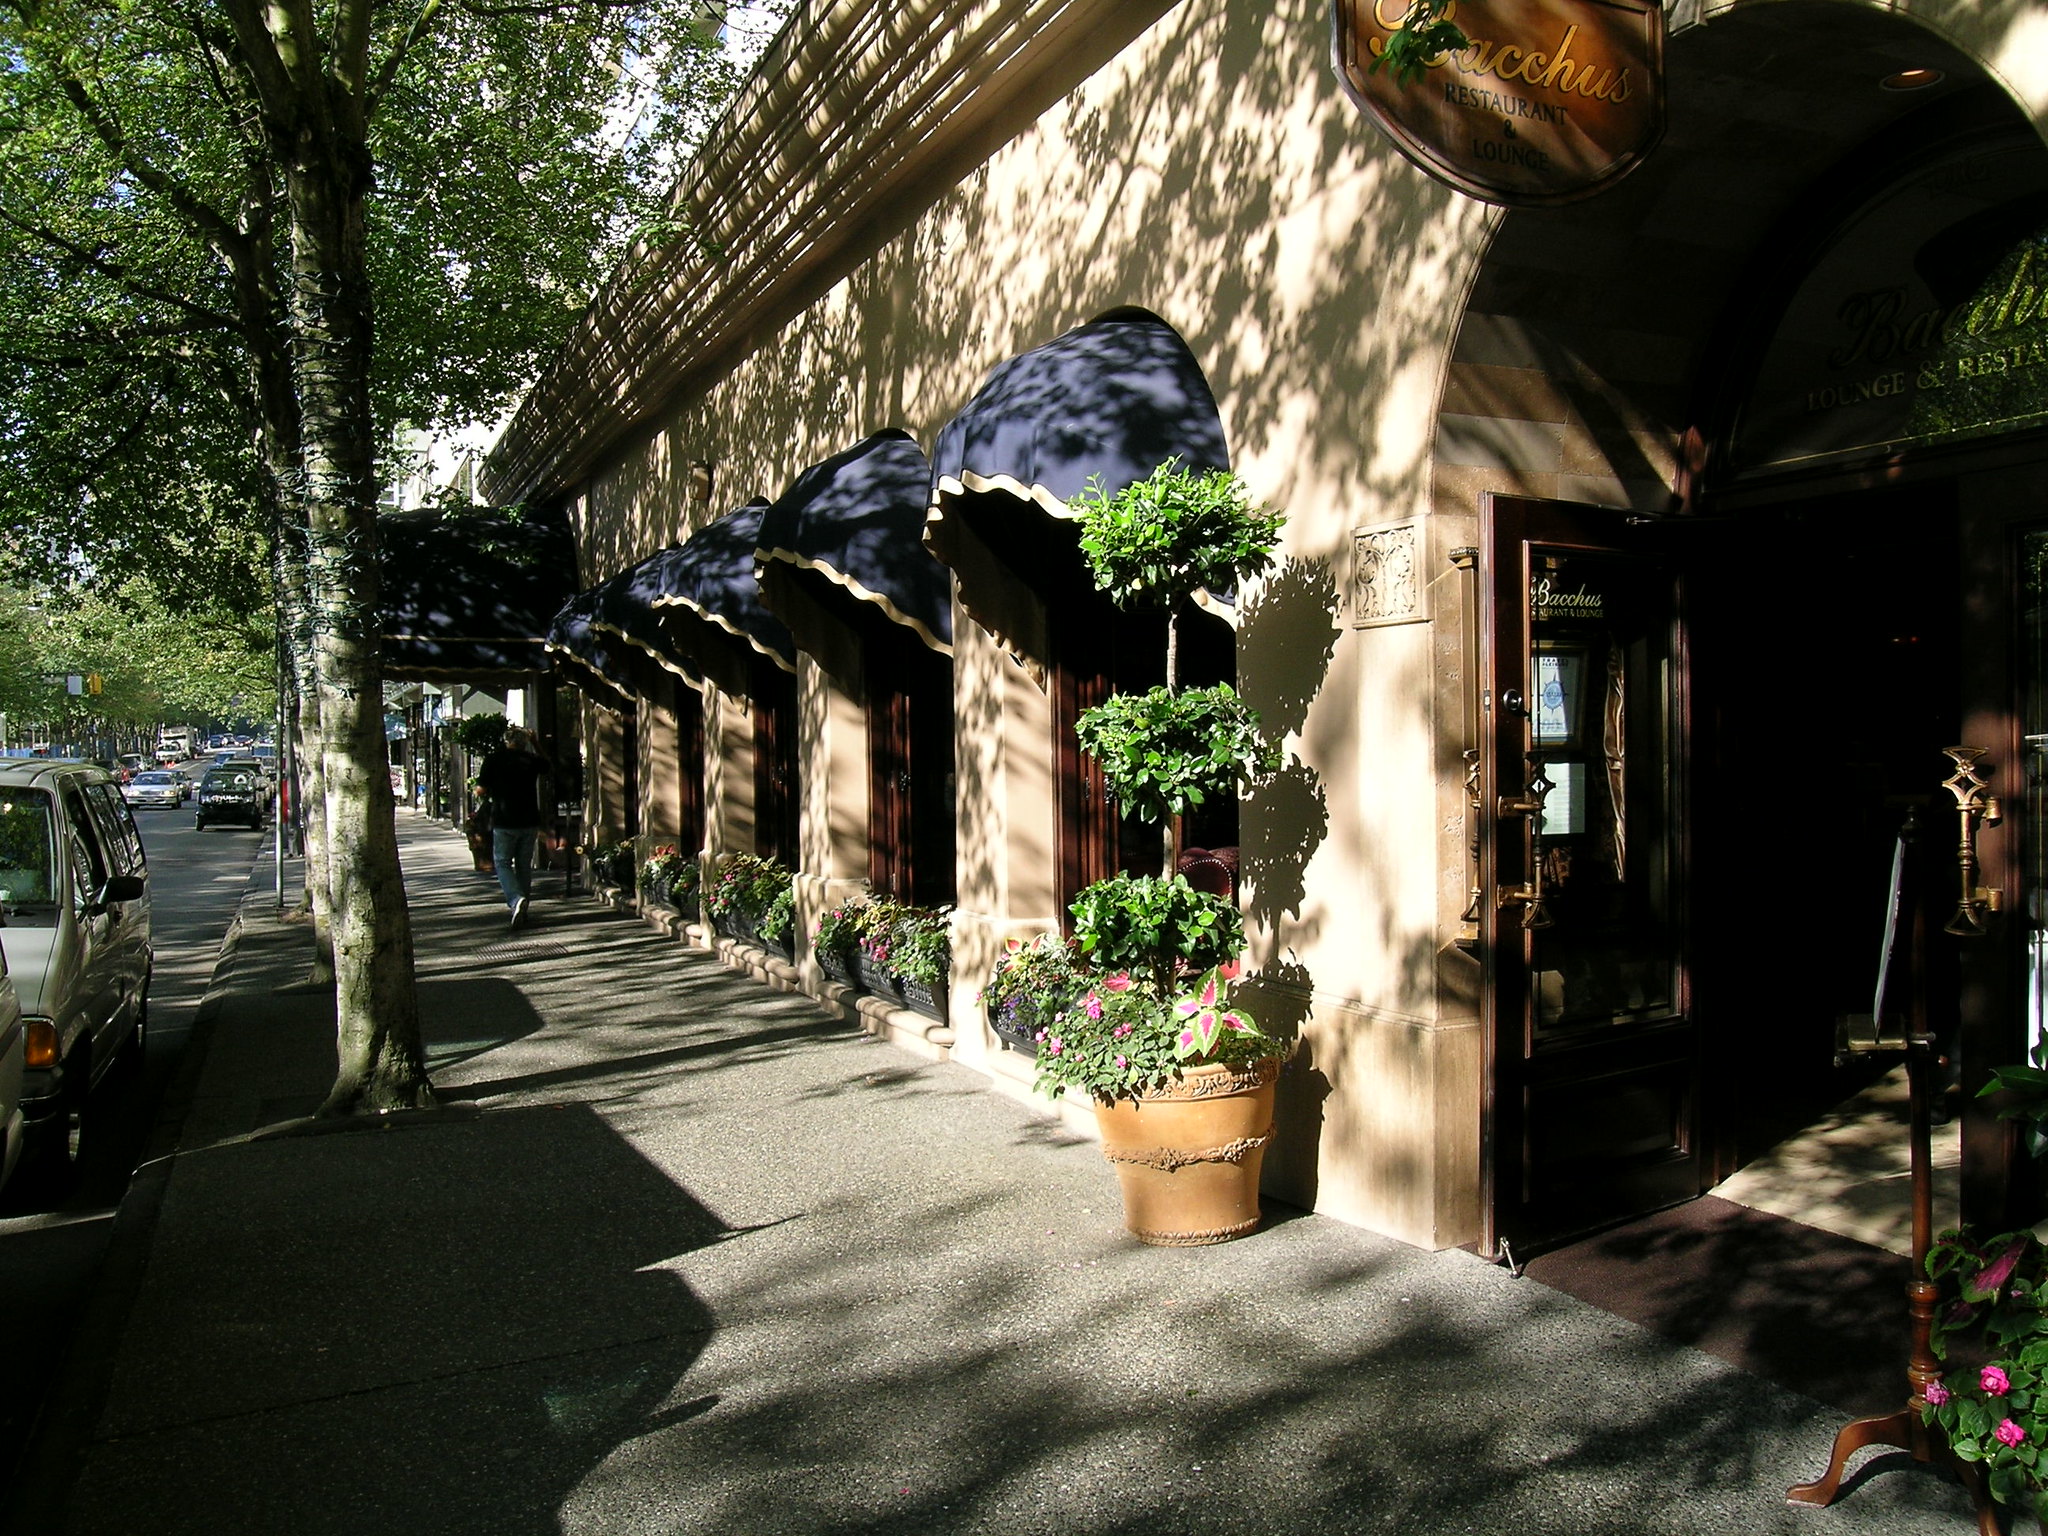 La entrada a un restaurante del hotel llamado Baco, a la sombra de árboles que bordean la calle.